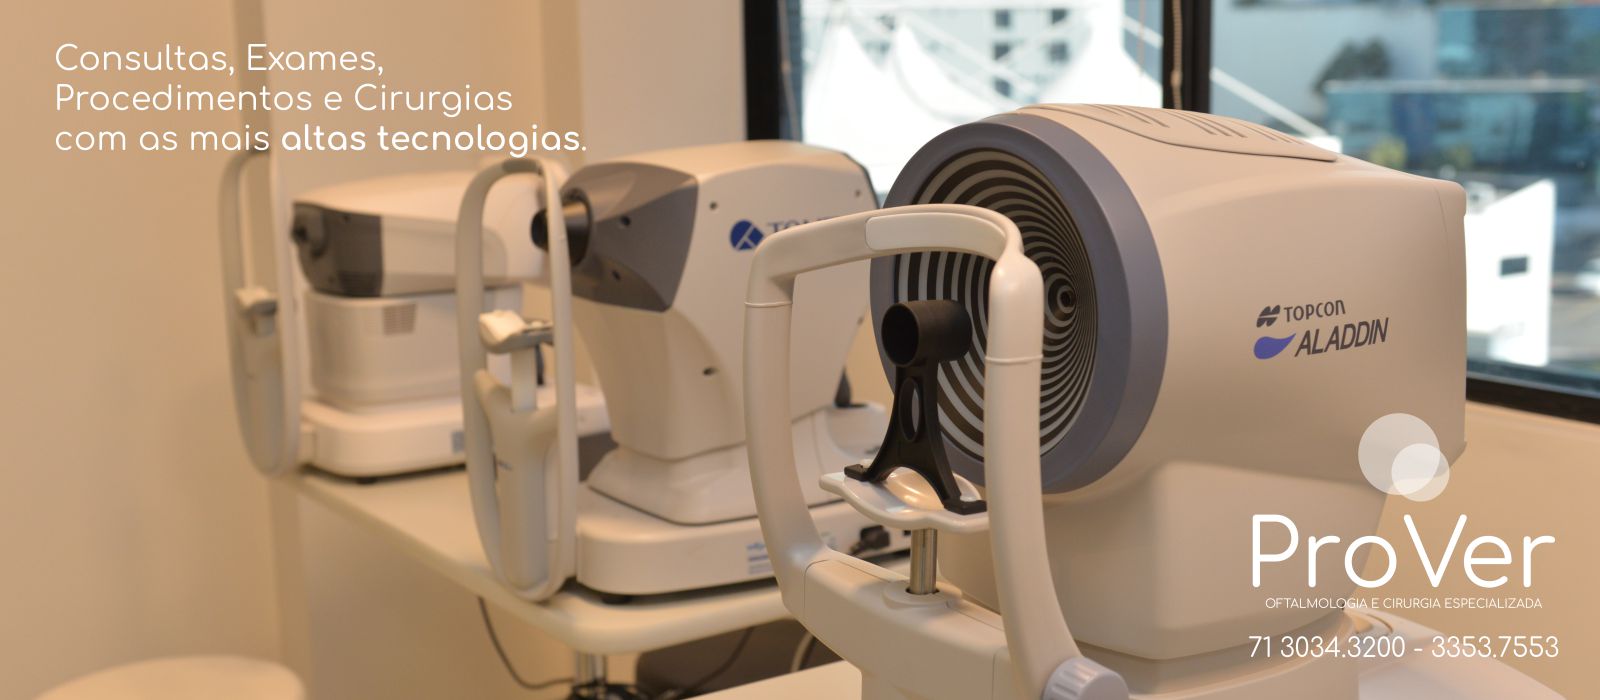 Prover Oftalmologia e Cirurgia Especializada - clínica oftalmológica em salvador, consultas, exames, procedimentos, cirurgias oftalmológicas